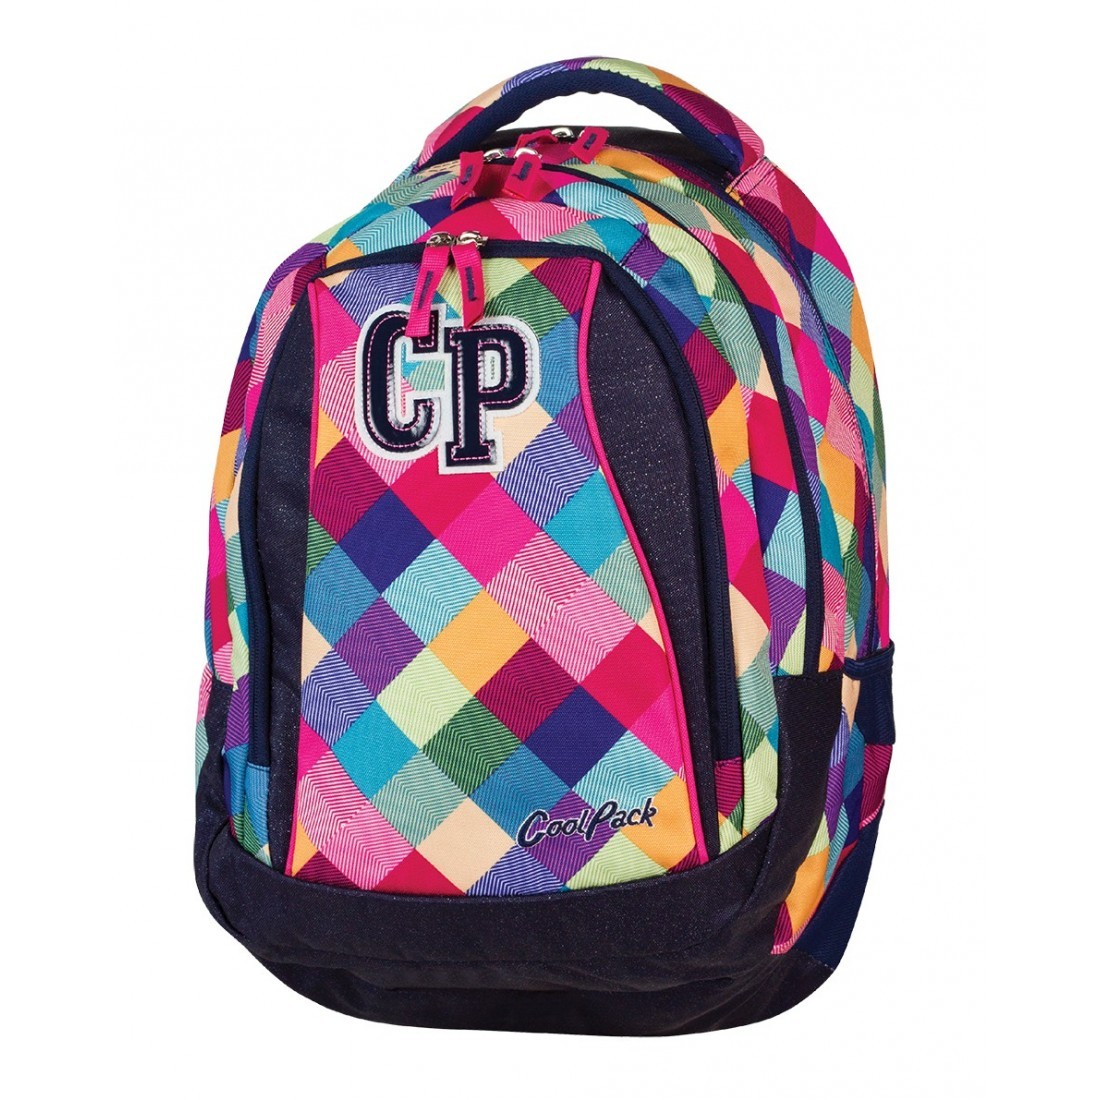 Plecak młodzieżowy CoolPack CP pastelowe kolory w kratkę - 3 przegrody STUDENT PATCHWORK 477 - plecak-tornister.pl